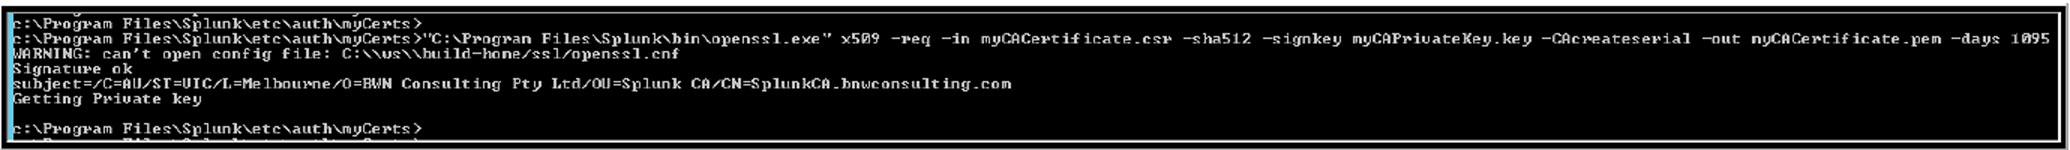 KB 095 - Splunk - Create Self-signed SSL Certificate V2 10